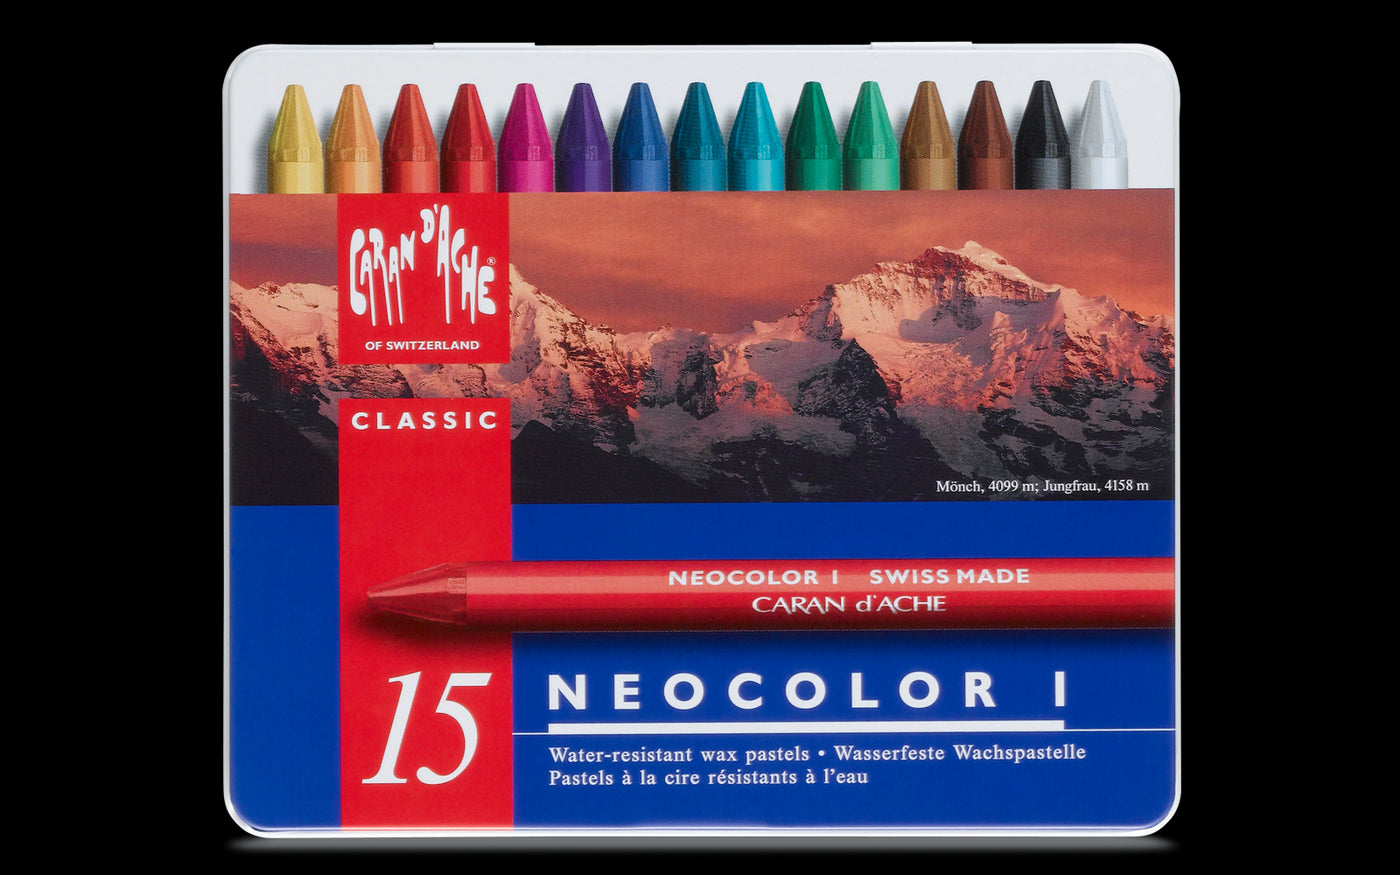 Caran d'Ache Neocolor I Wax Pastel Set 15